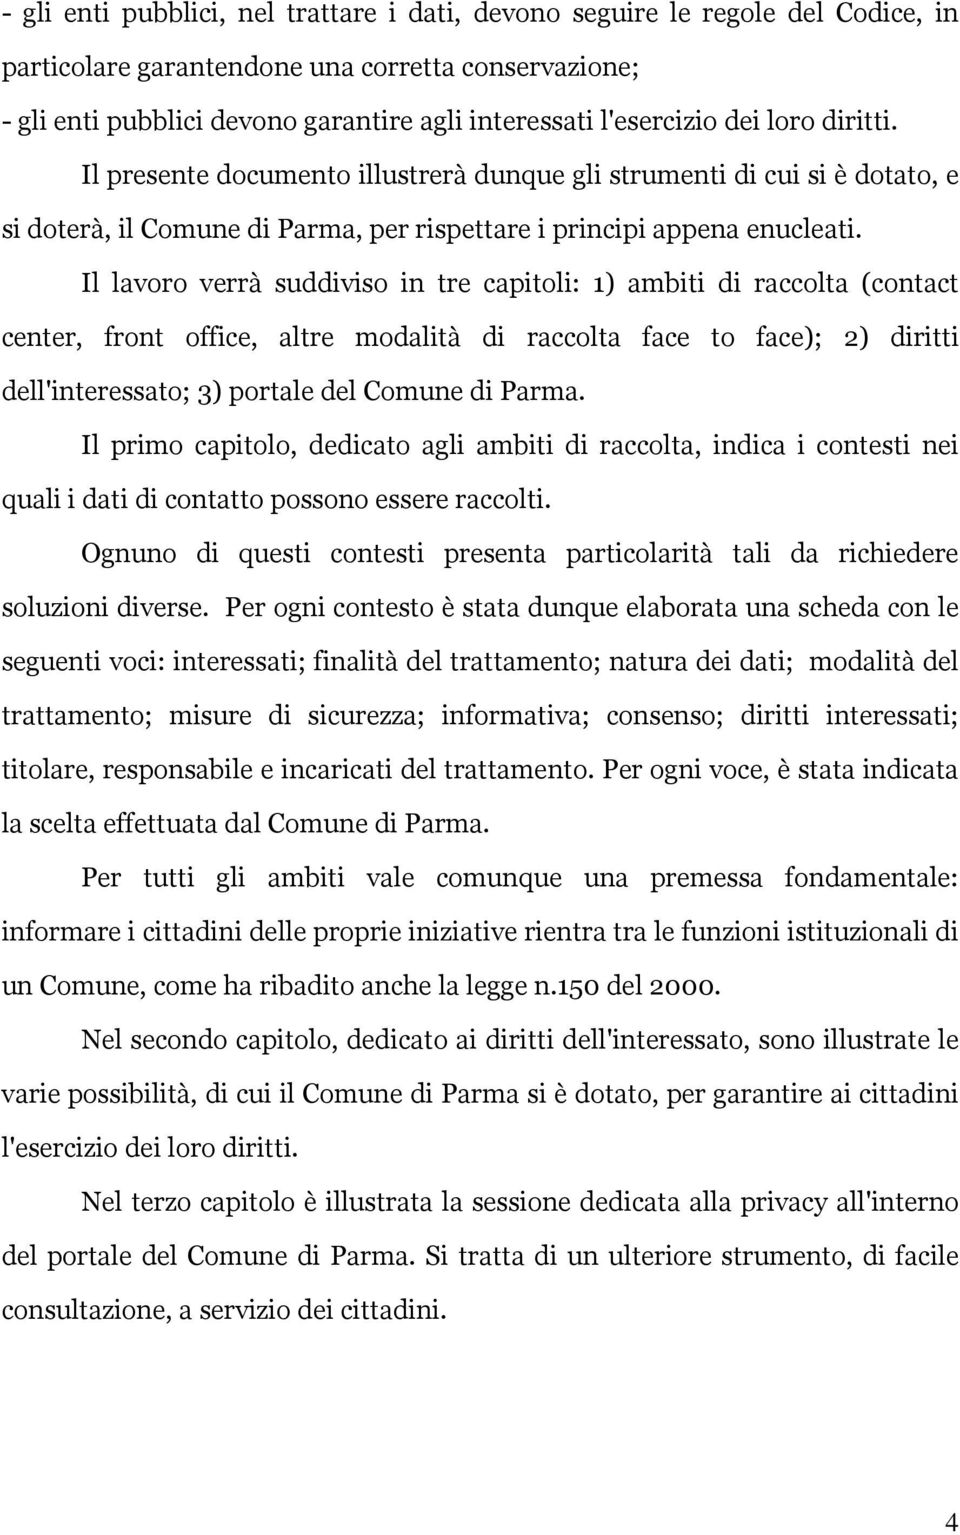 Il lavoro verrà suddiviso in tre capitoli: 1) ambiti di raccolta (contact center, front office, altre modalità di raccolta face to face); 2) diritti dell'interessato; 3) portale del Comune di Parma.